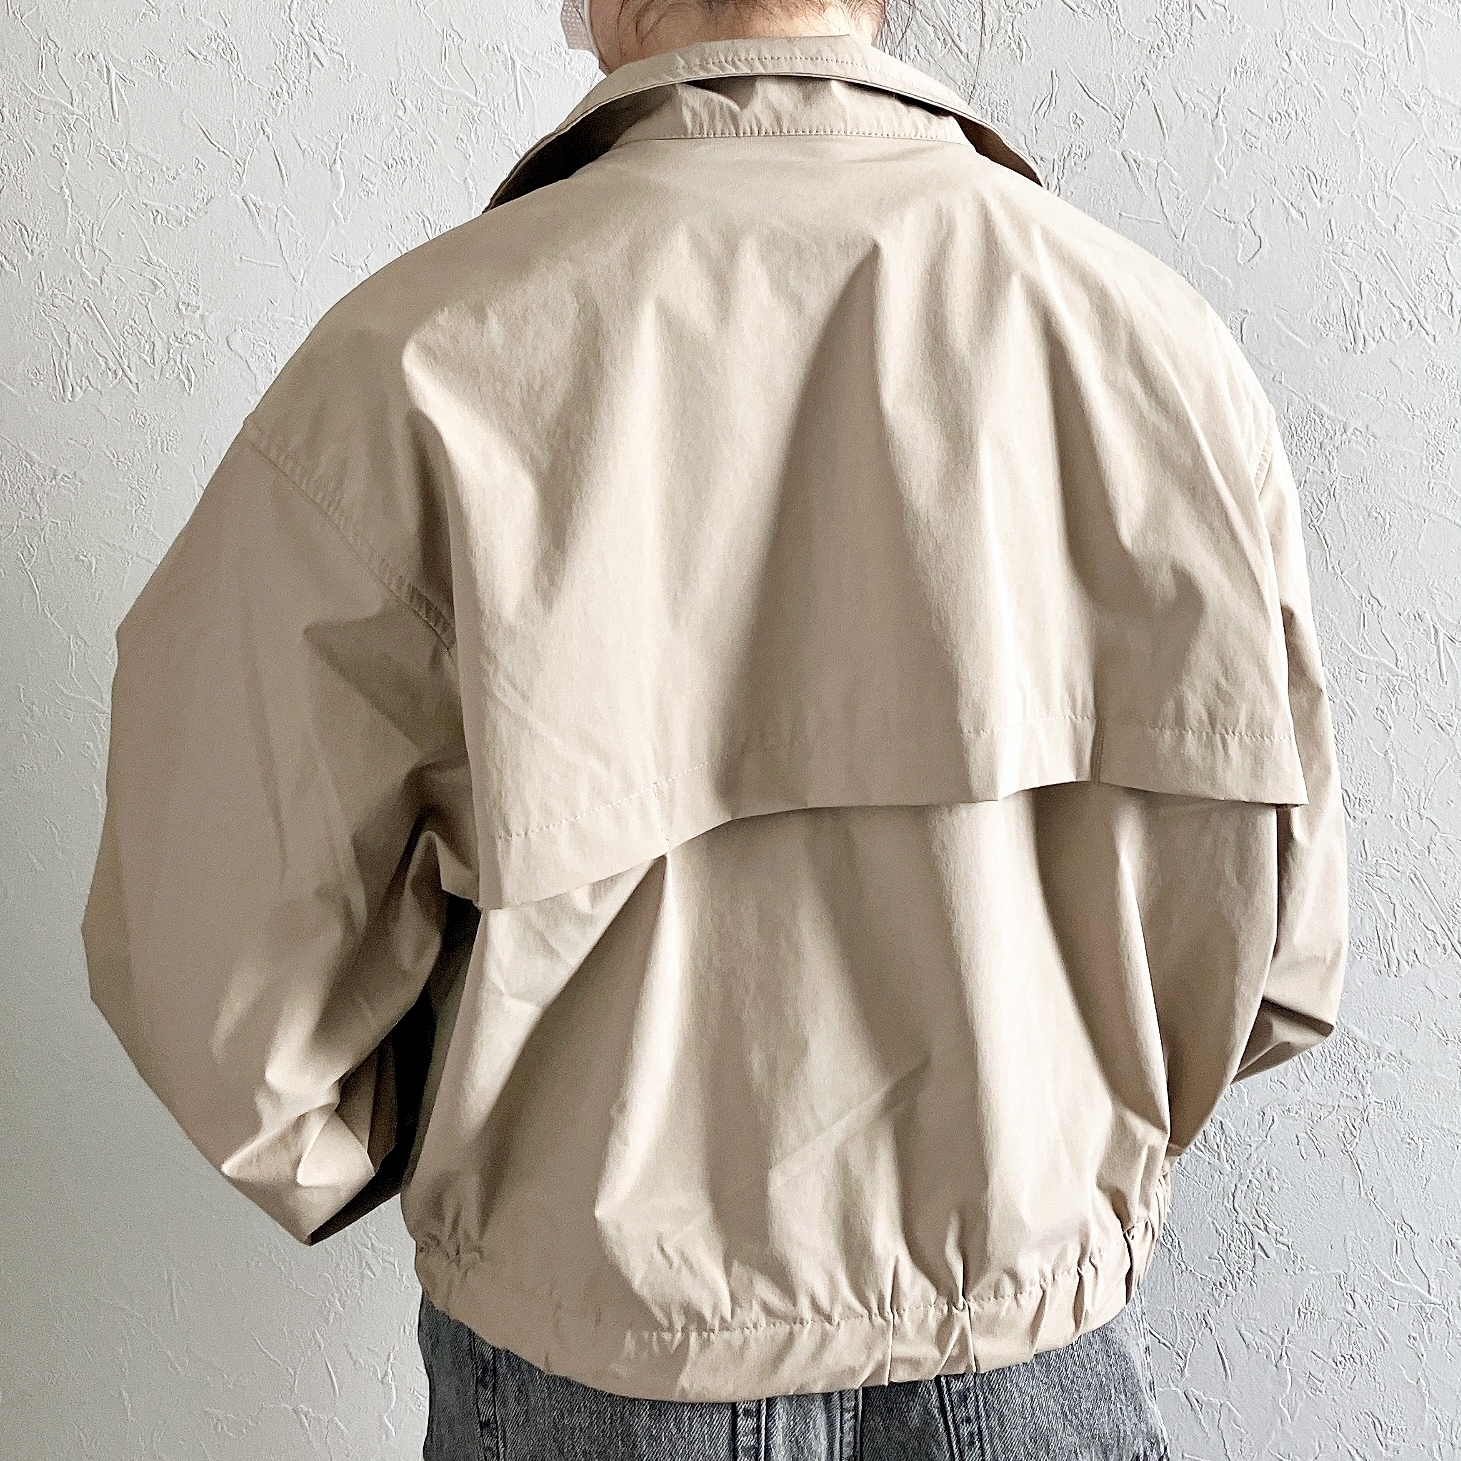 GU（ジーユー）のおすすめジャケット「UVカットマルチテックジャケットGA+E」